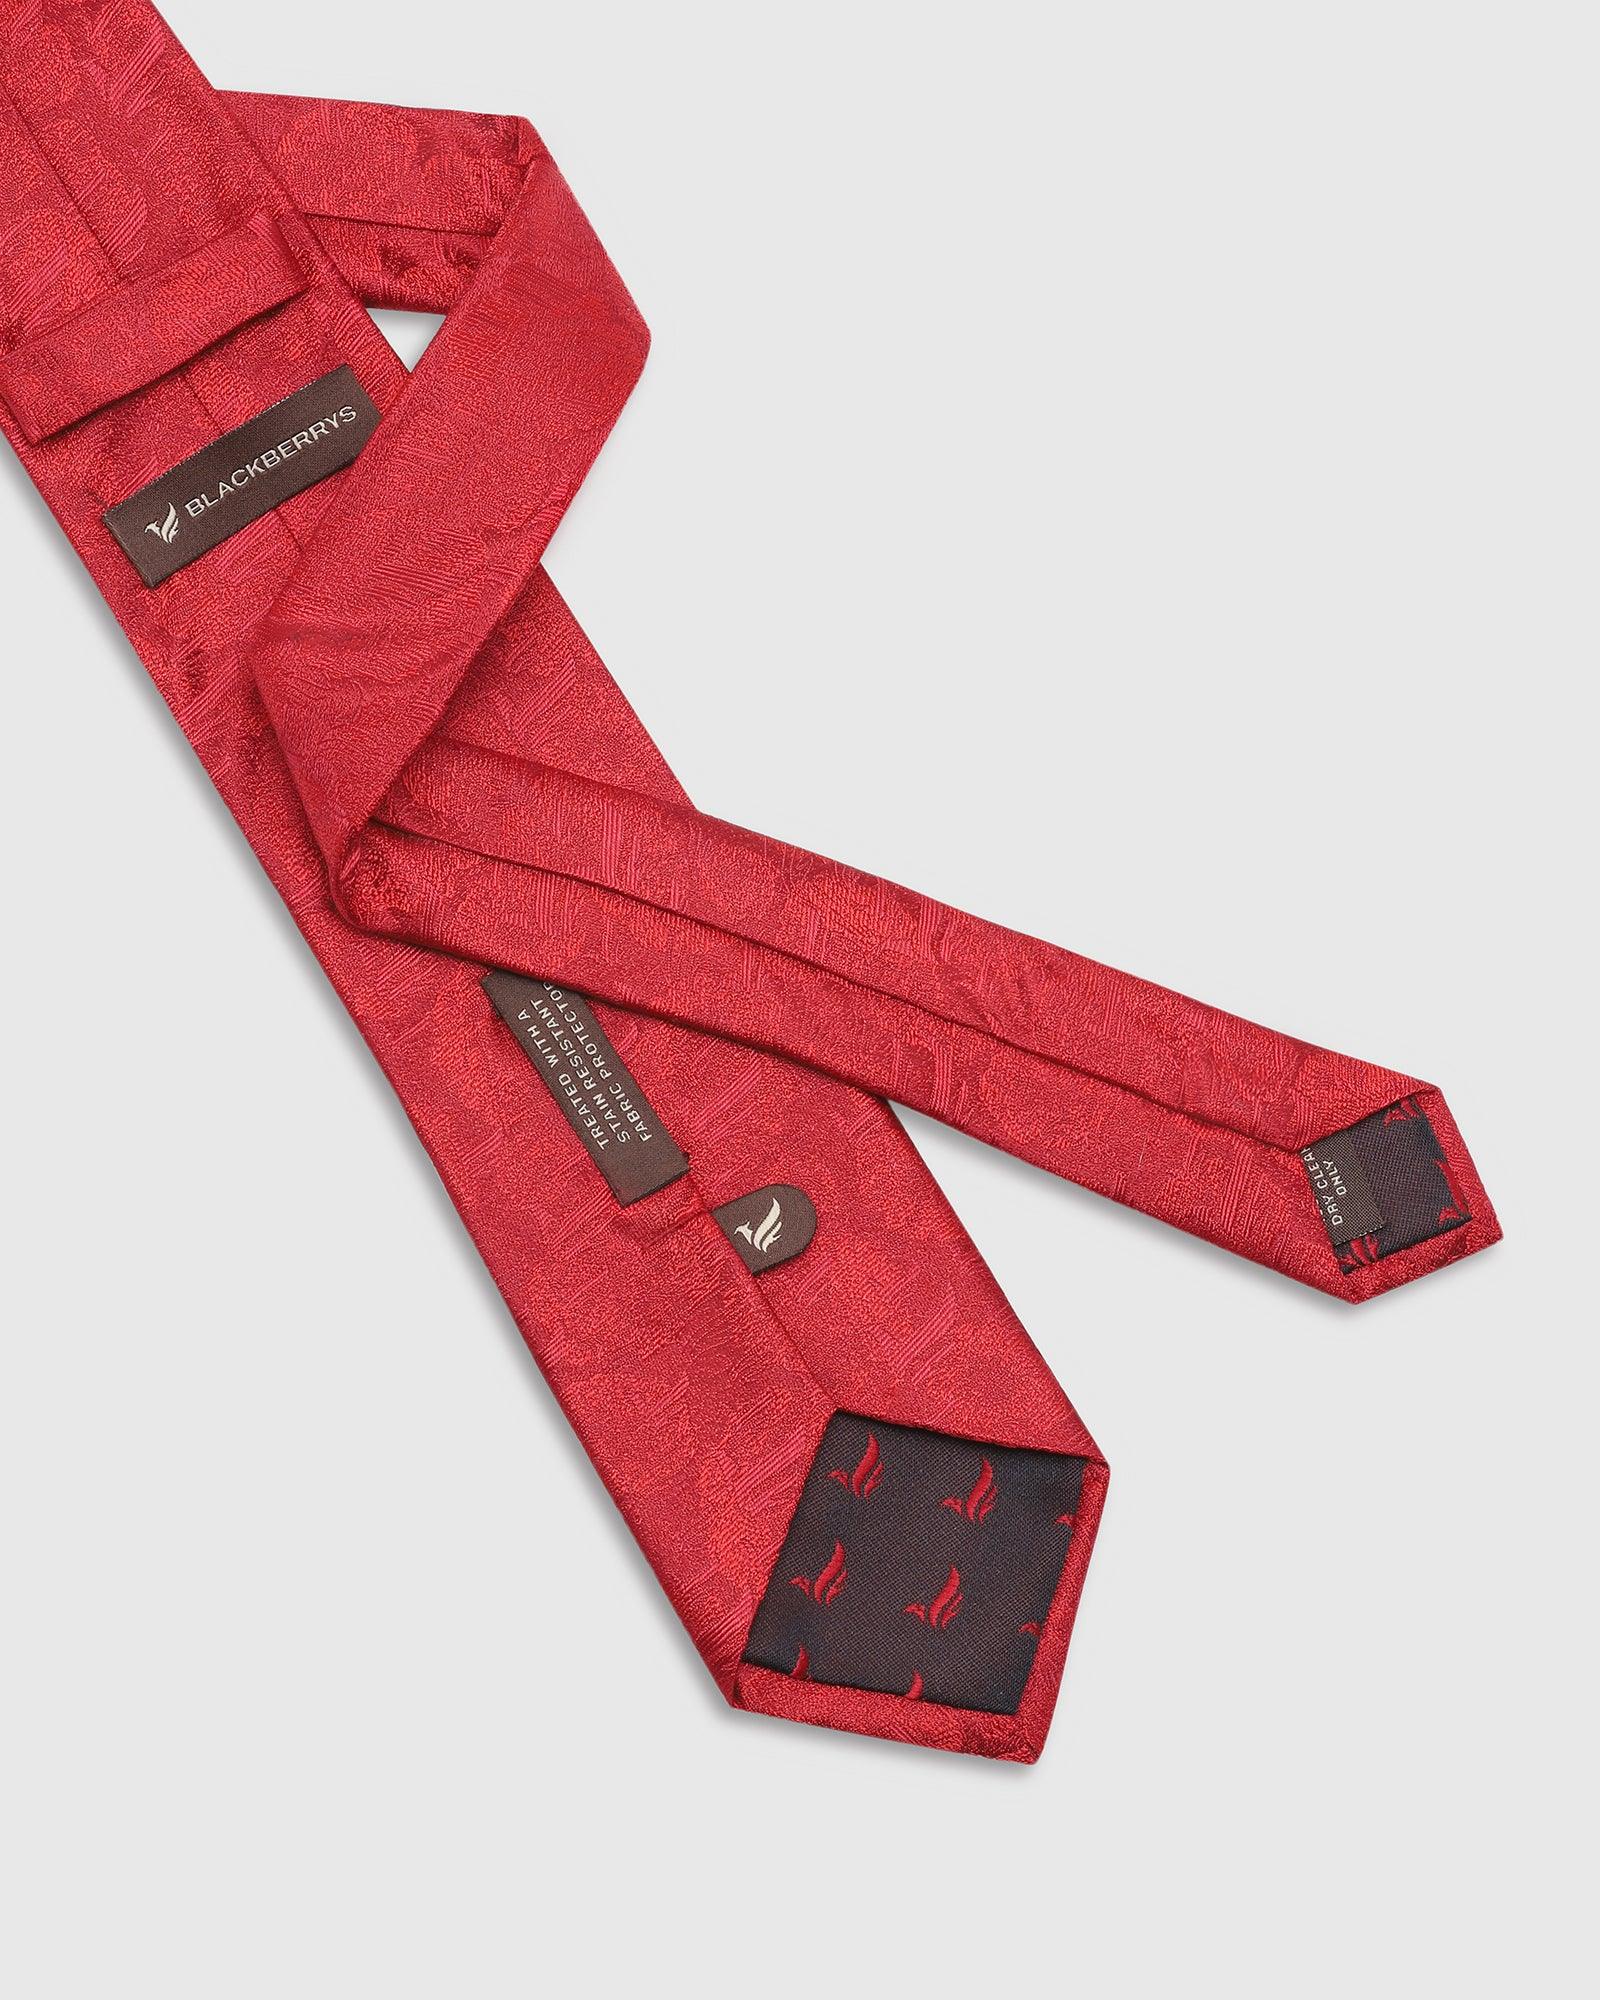 Printed Tie In Red (Talisca) - Blackberrys